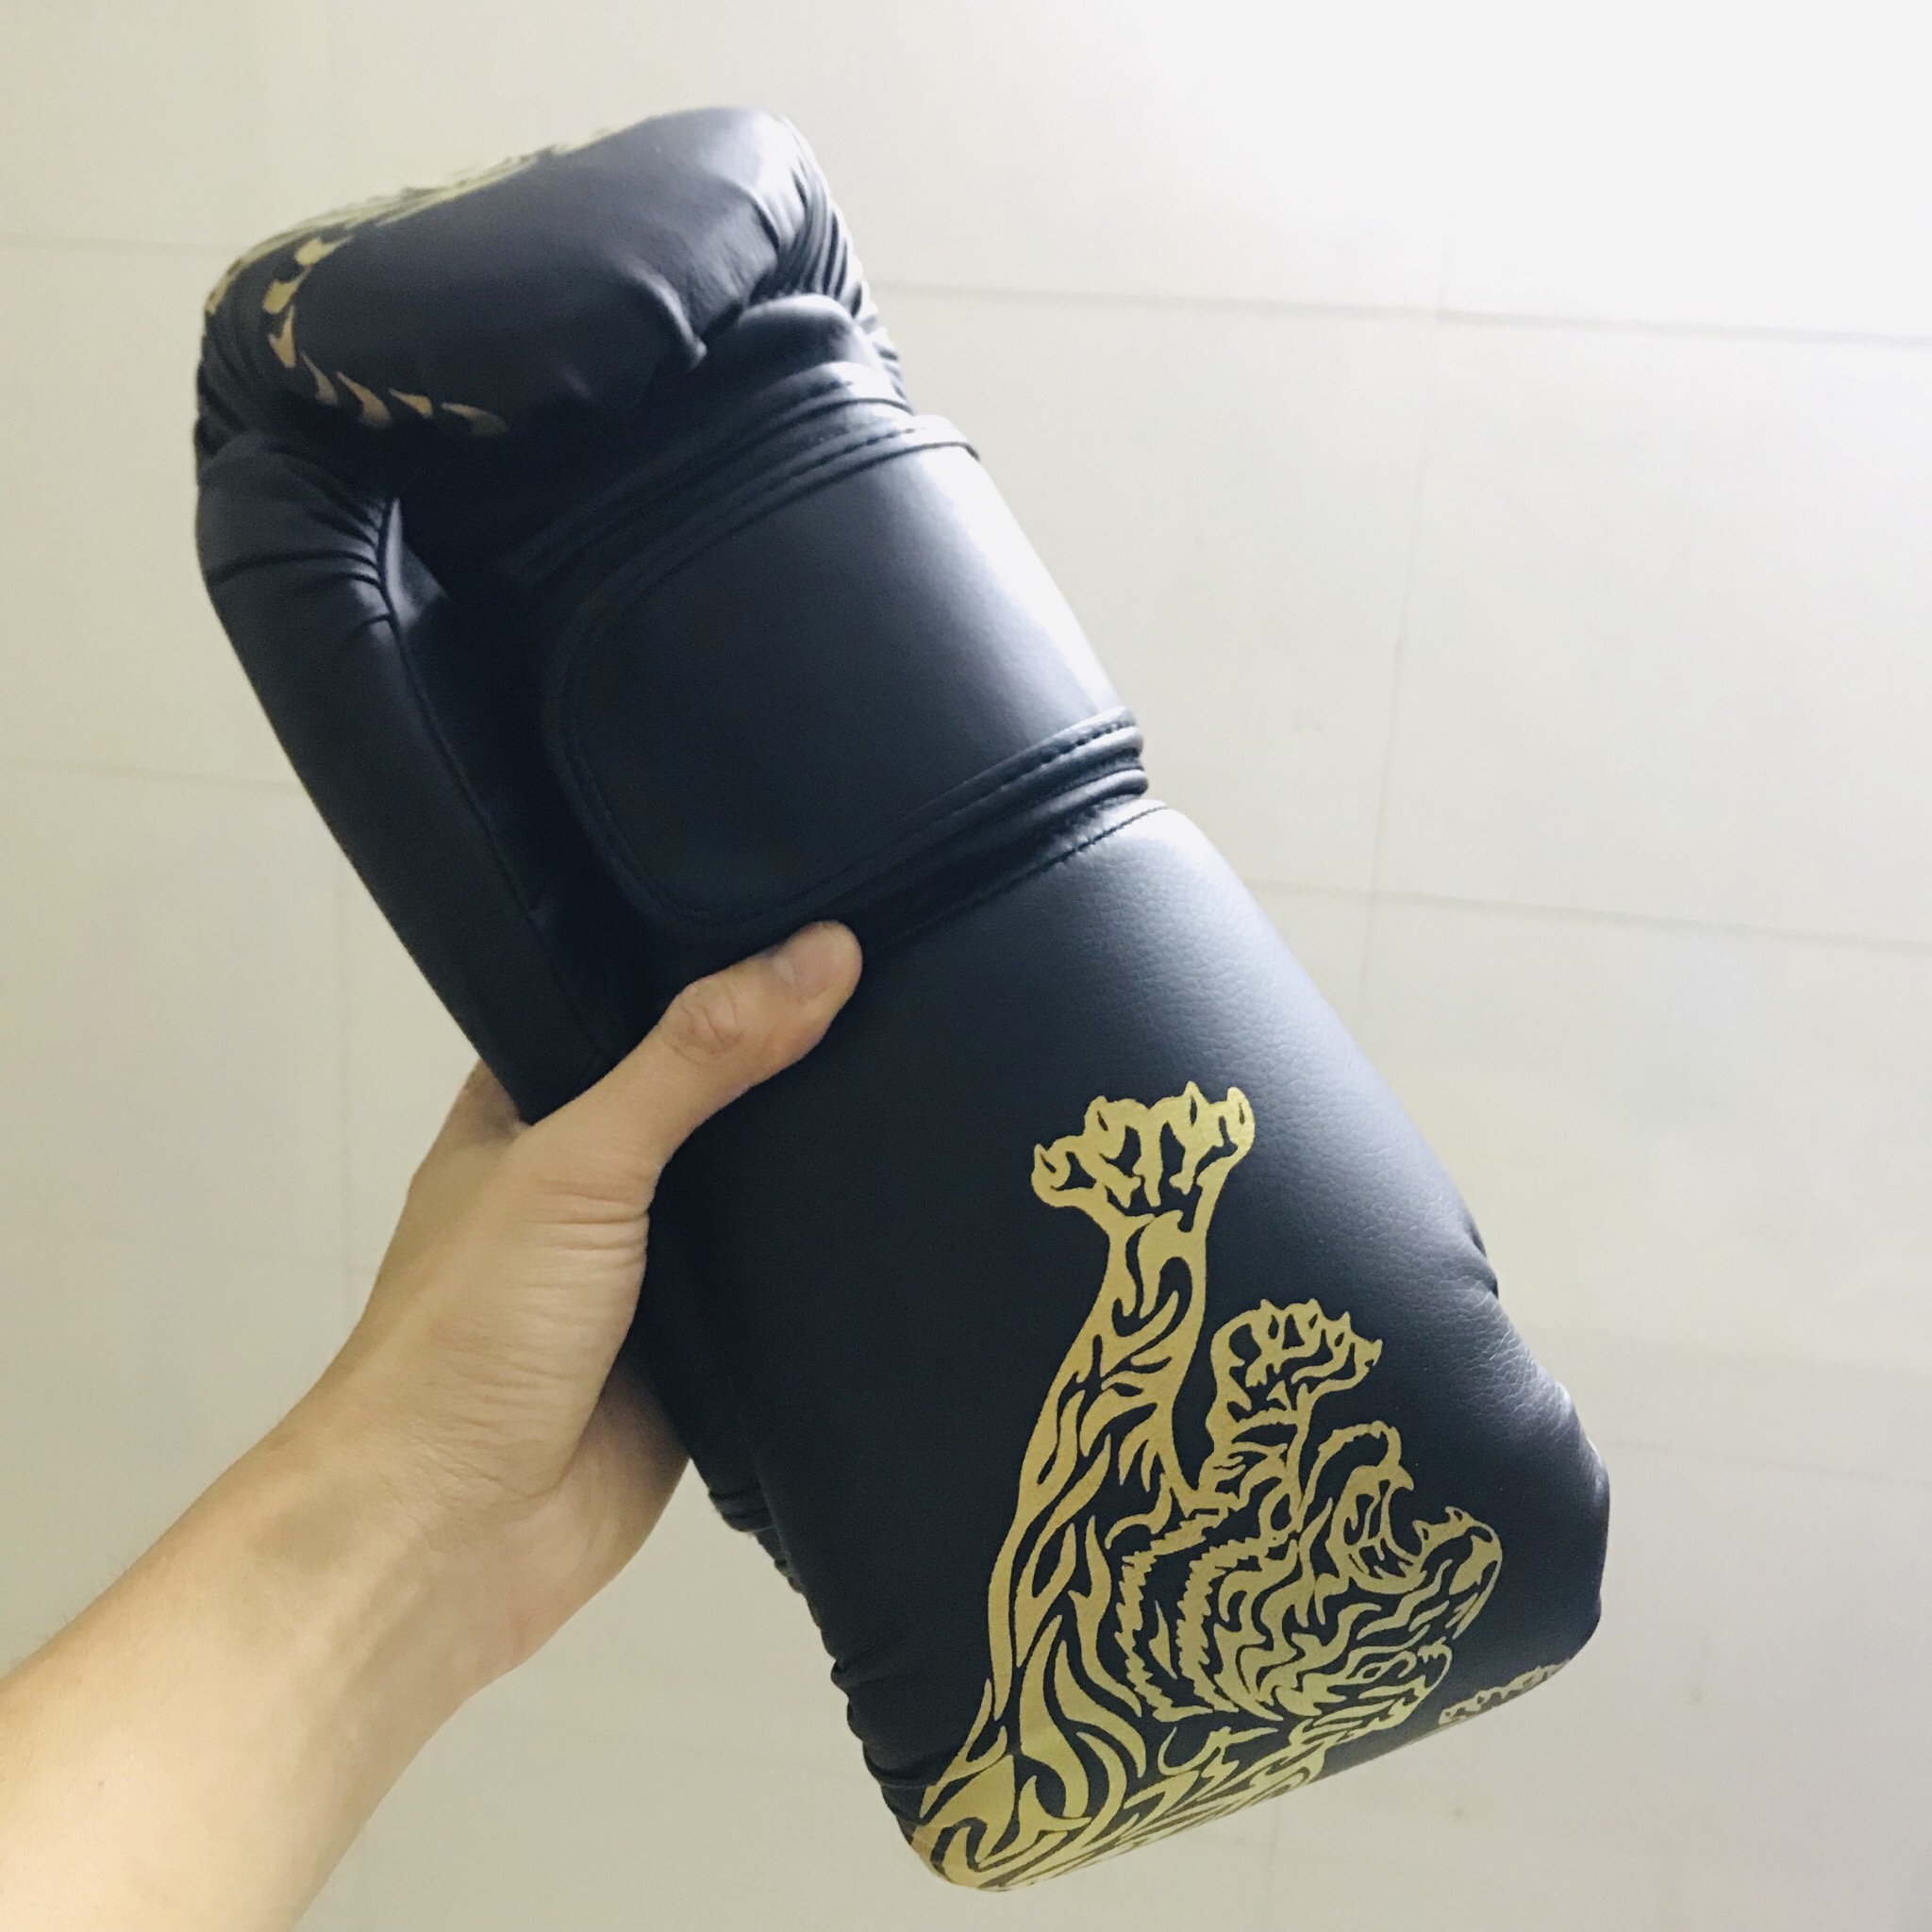 Găng Tay Boxing Người Lớn miDoctor – Găng Tay Đấm Bốc Người Lớn Chính Hãng